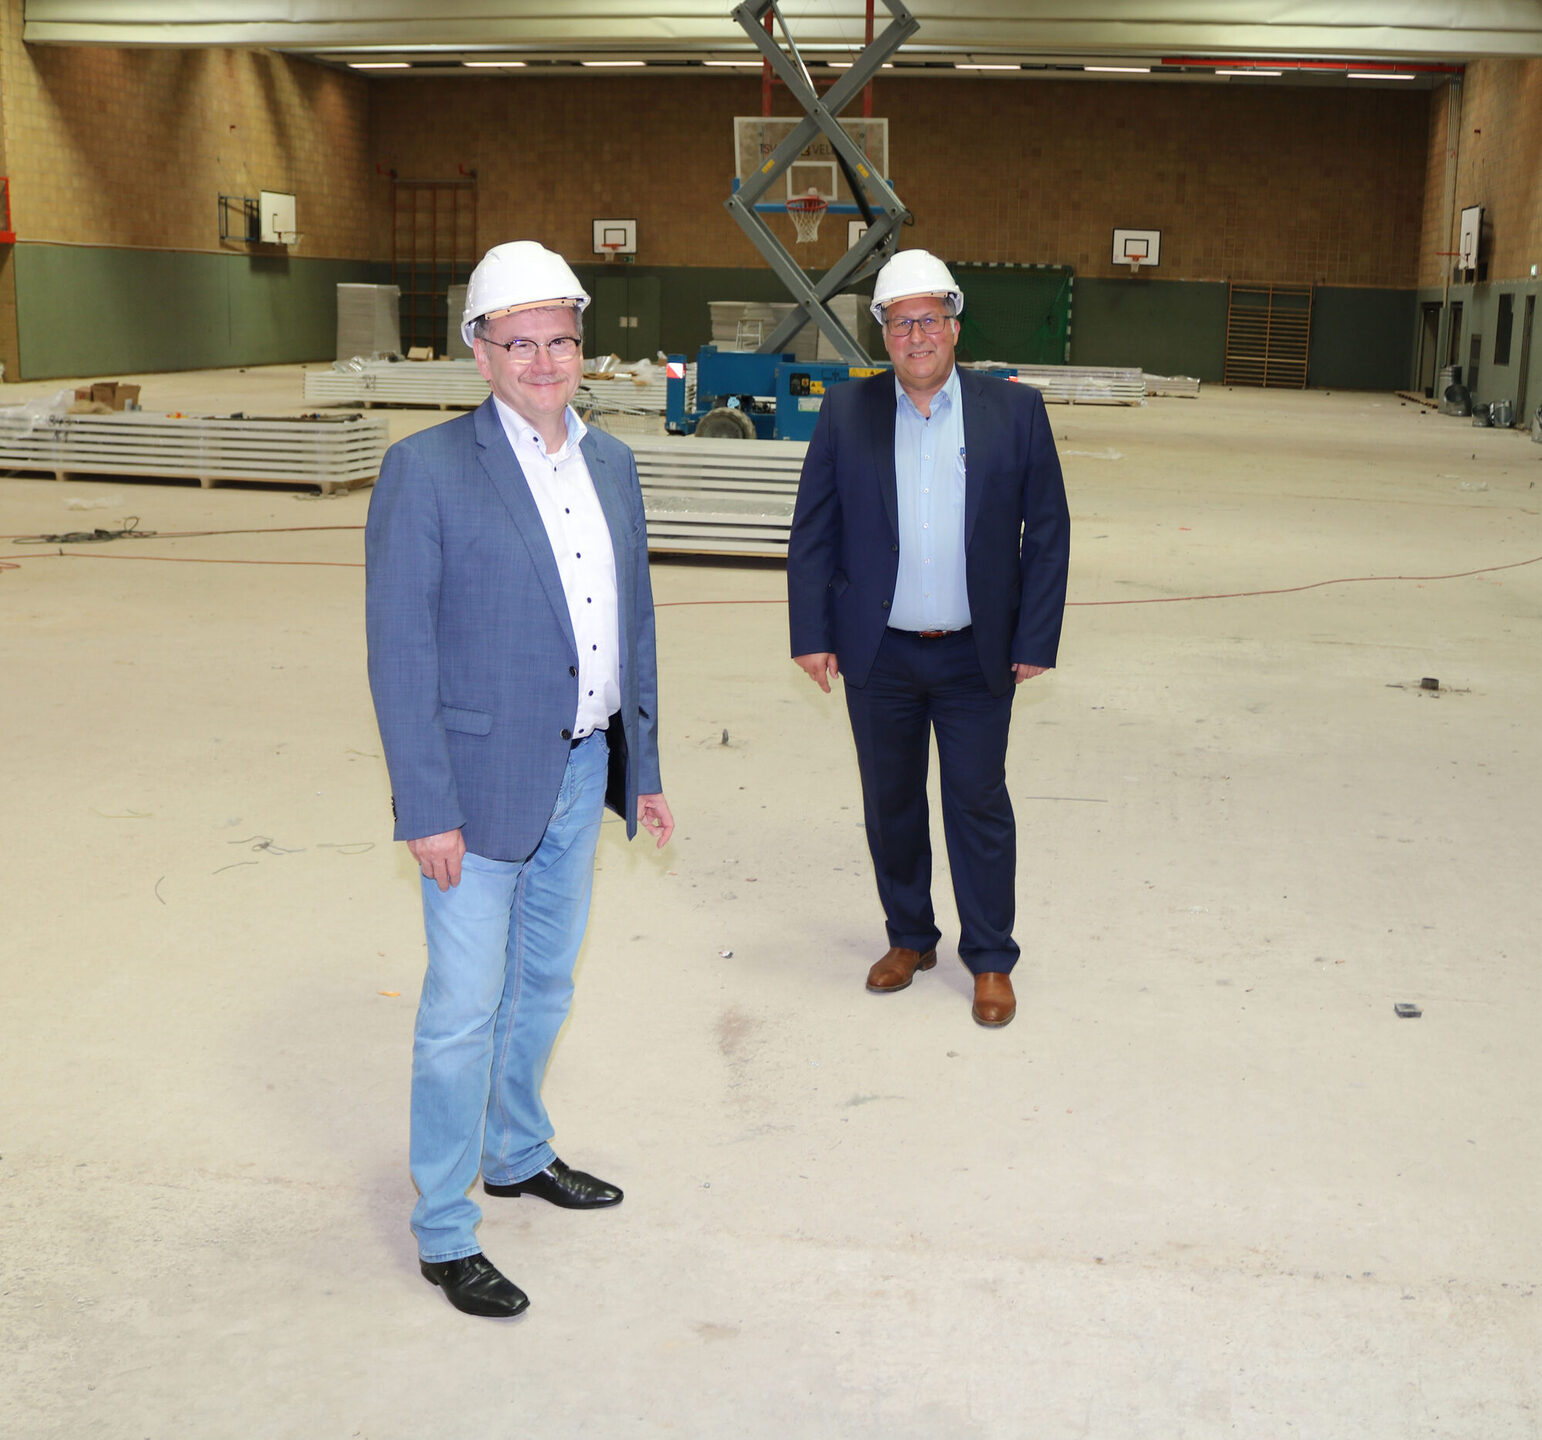 Landrat Uwe Schmidt (links) und Bürgermeister Manfred Ludewig bei der Besichtigung der Sanierungsarbeiten in der Großsporthalle in Vellmar.